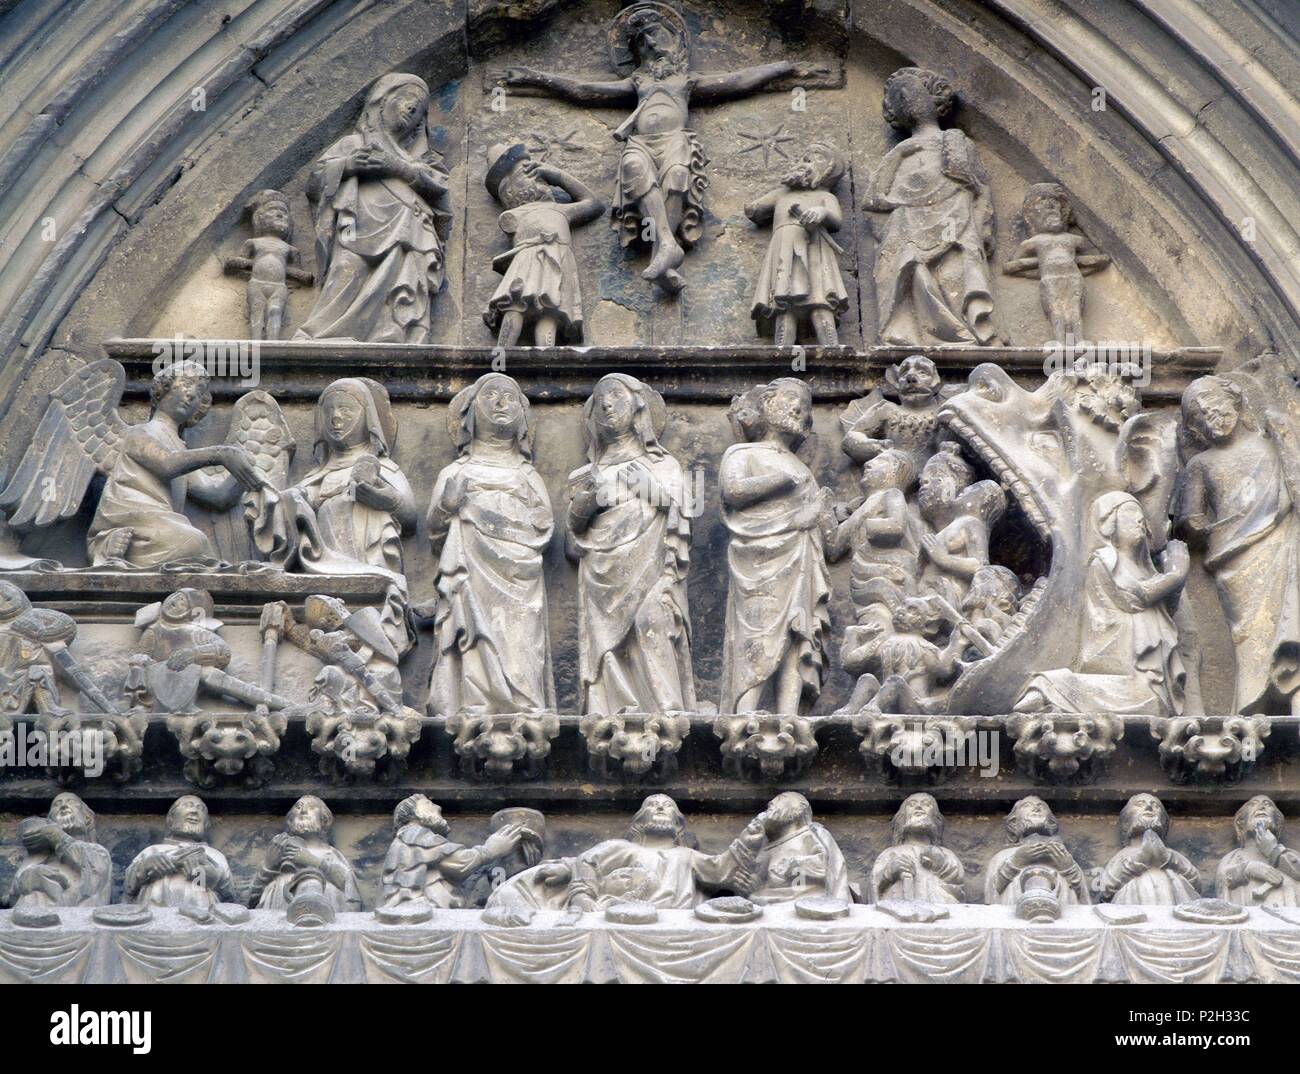 Iglesia del Santo Sepulcro, Estella, provincia de Navarra. Detalle de la fachada. Representación de la Última Cena. Stock Photo